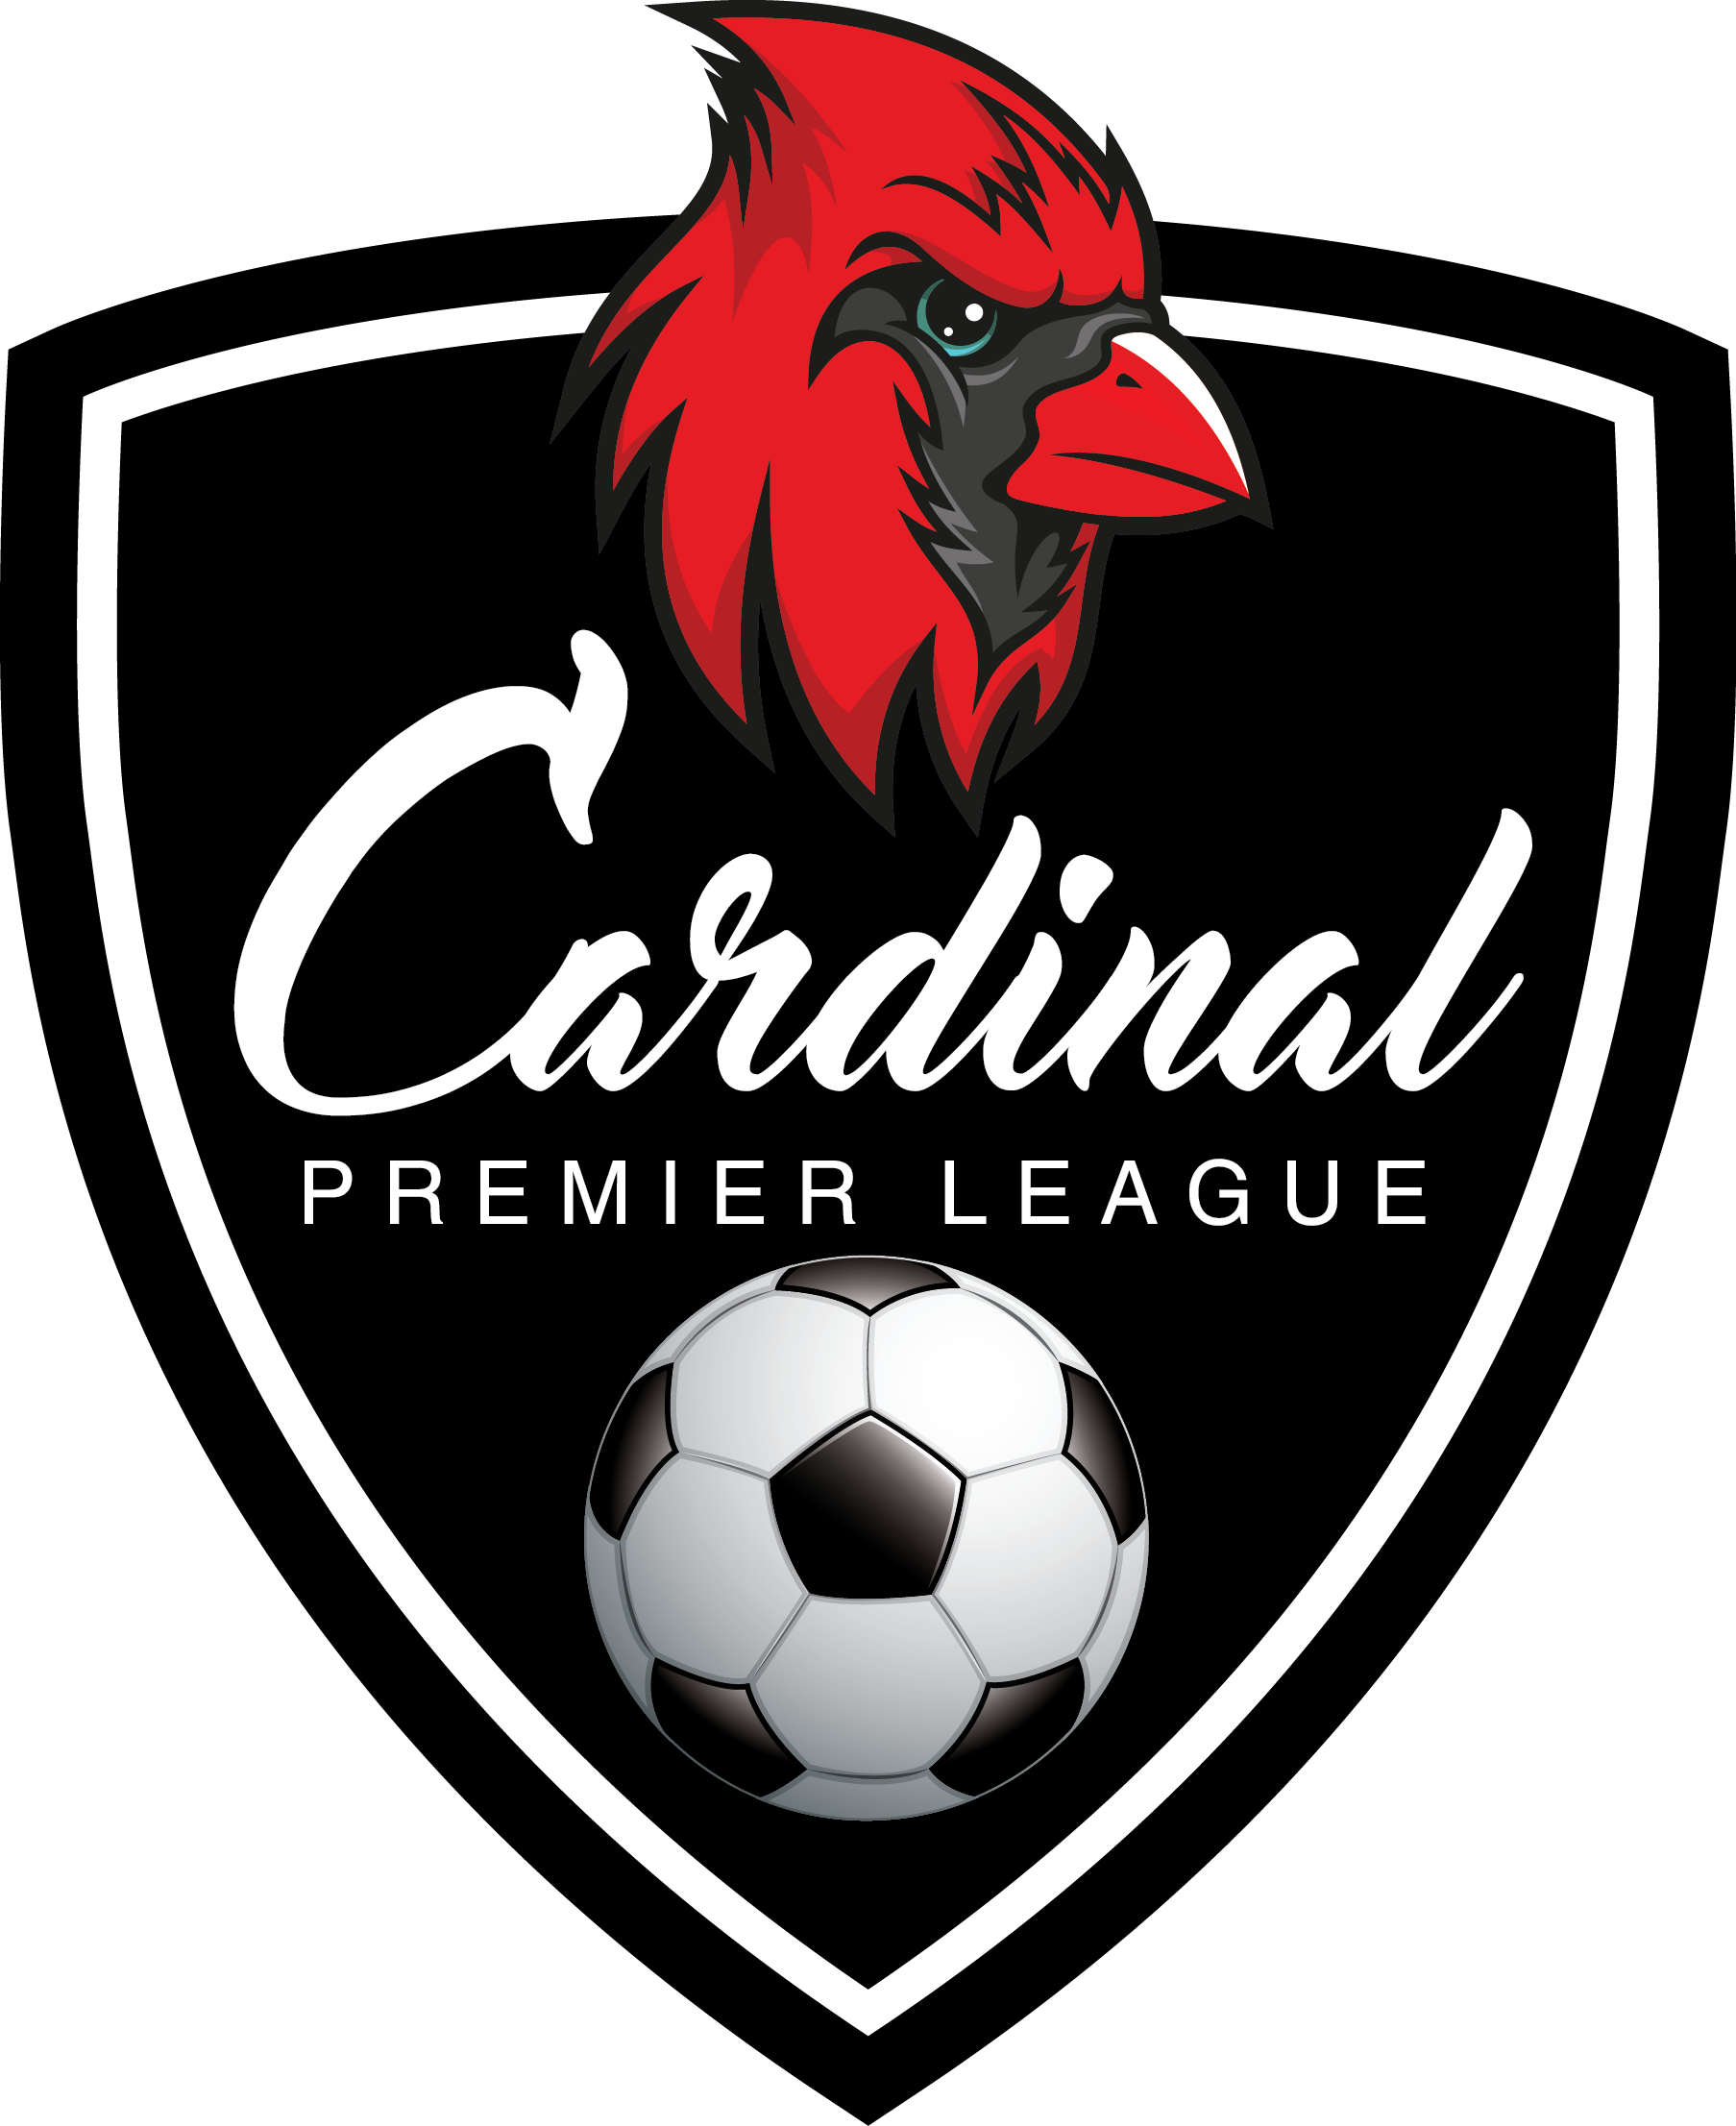 Cardinal Premier League